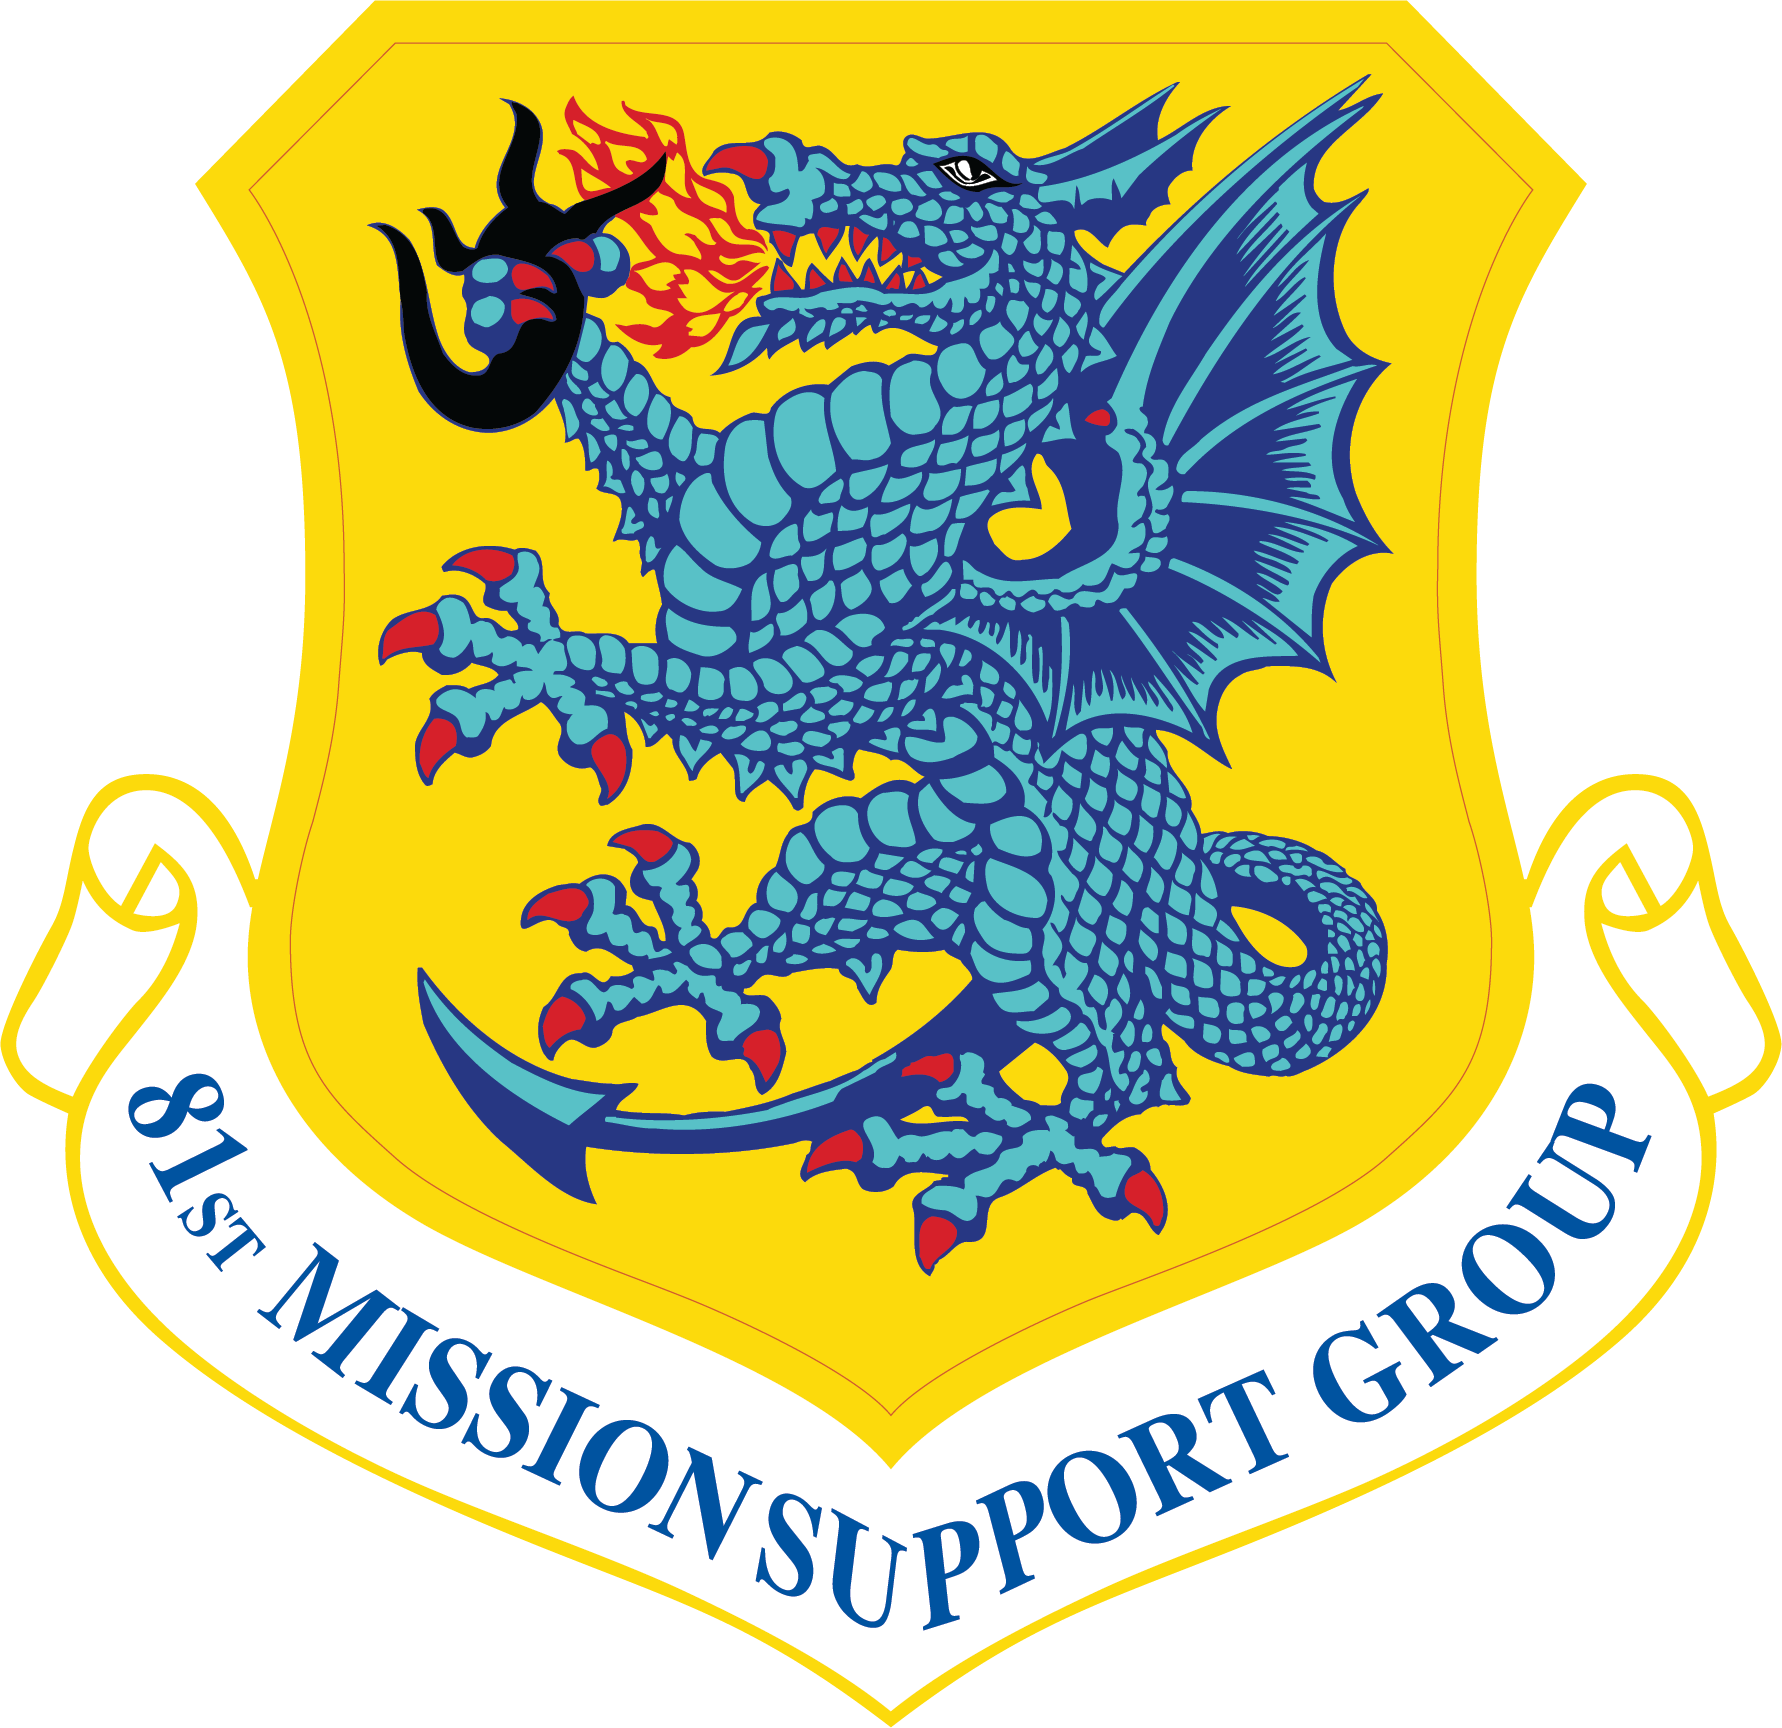 81st Mission Support Group emblem